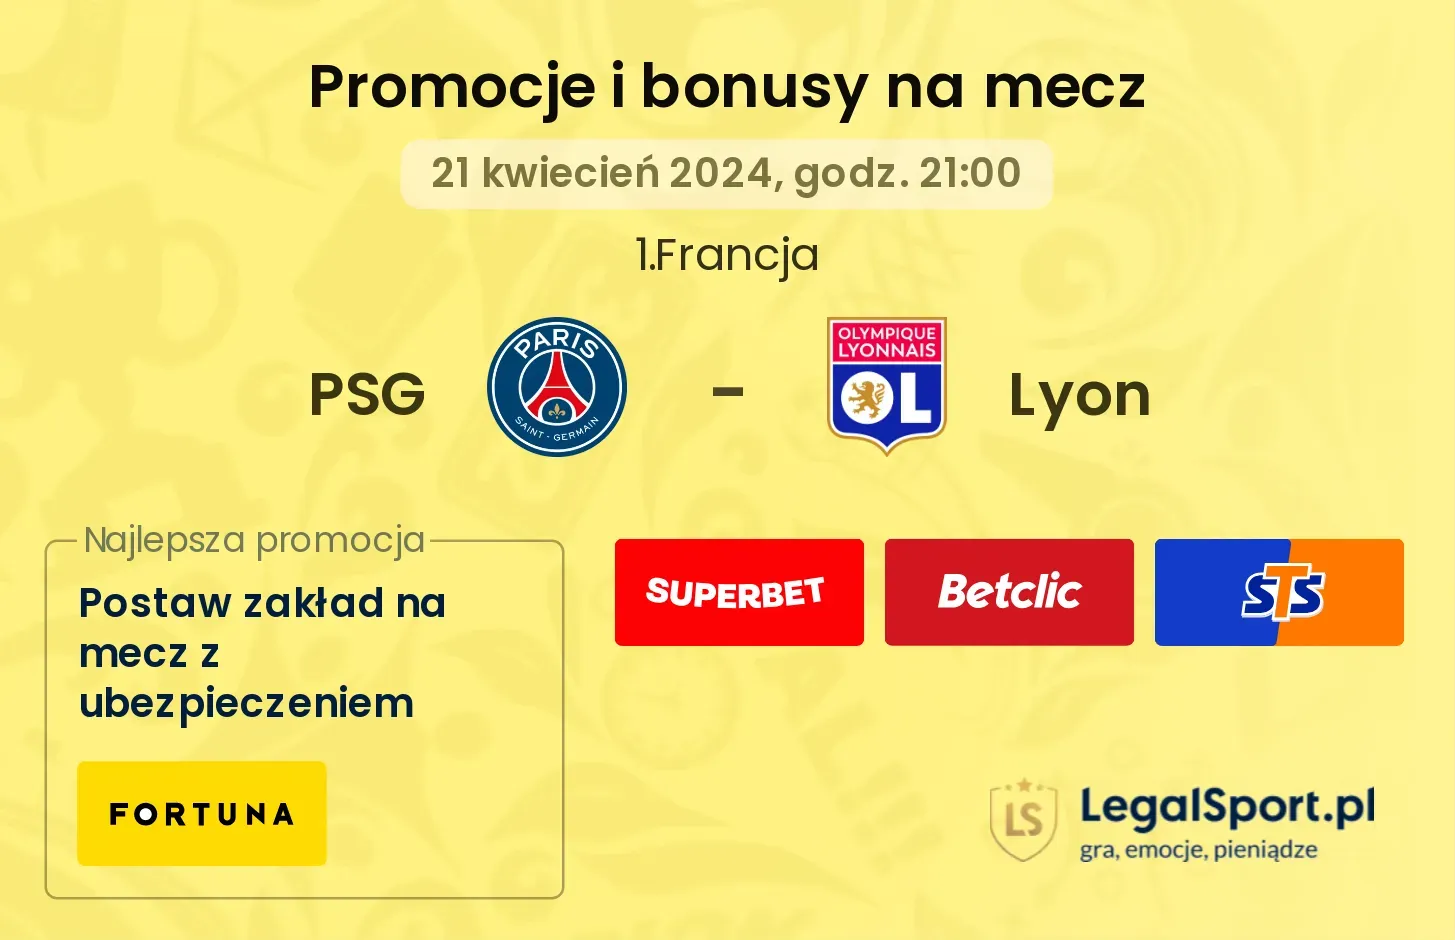 PSG - Lyon promocje bonusy na mecz